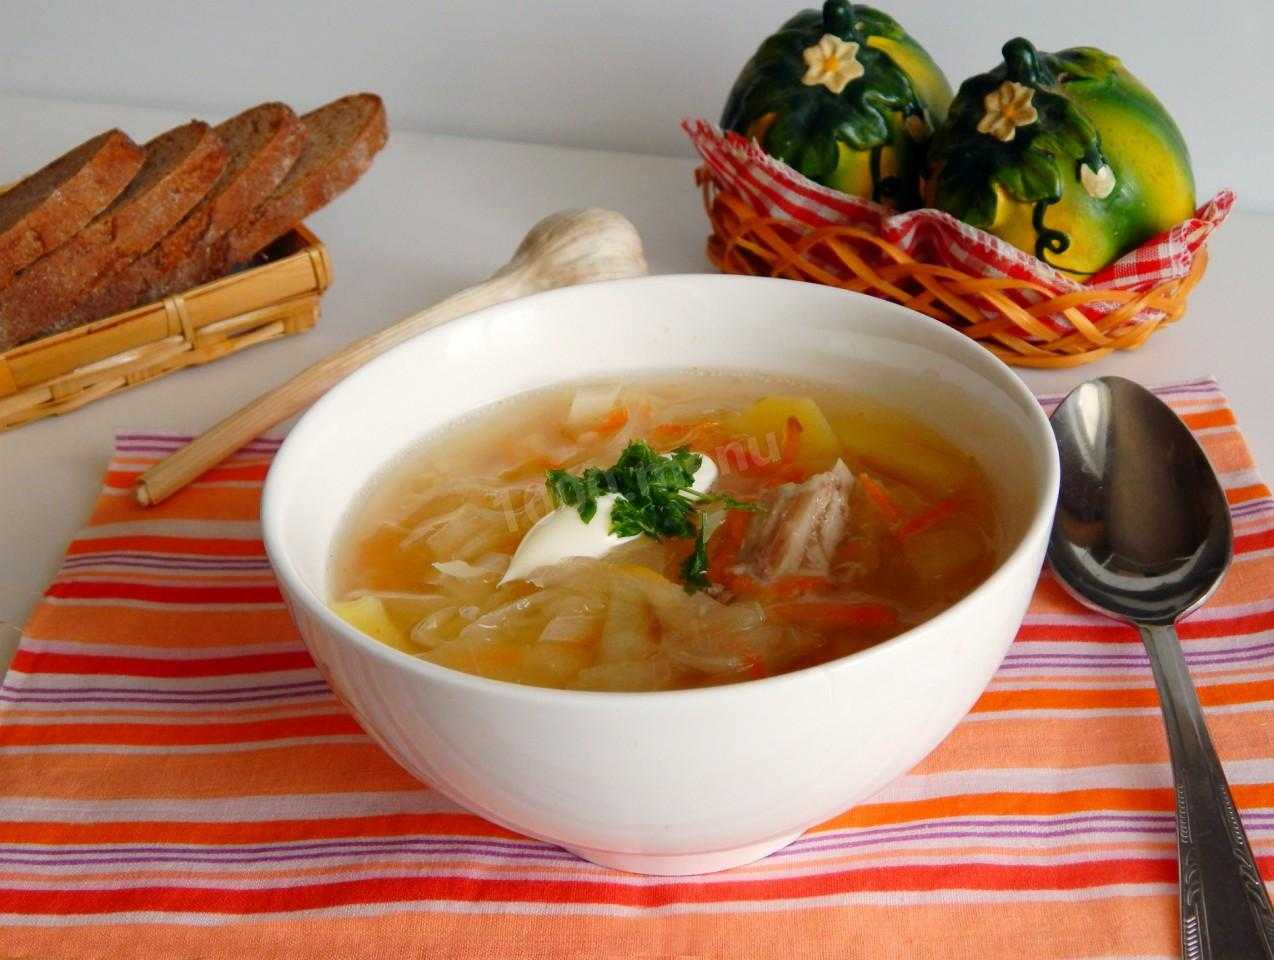 Рецепты классического борща со свининой и квашеной капустой — готовим очень вкусный суп